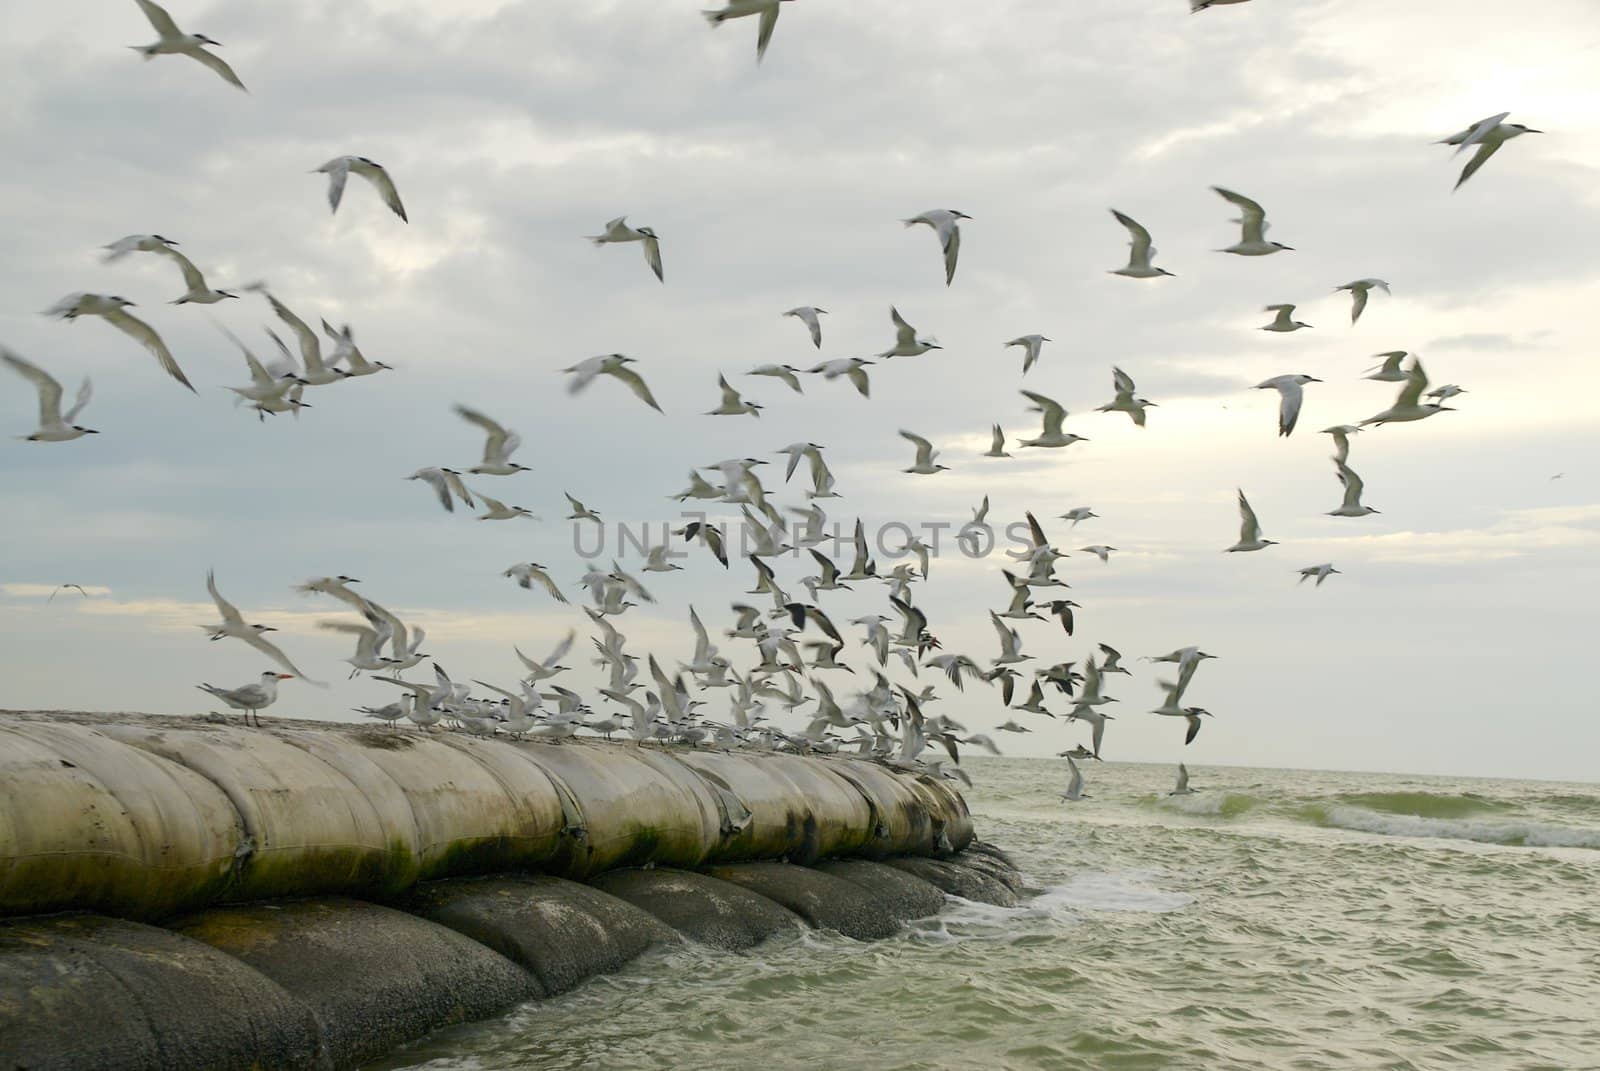 Seabirds taking flight by npologuy